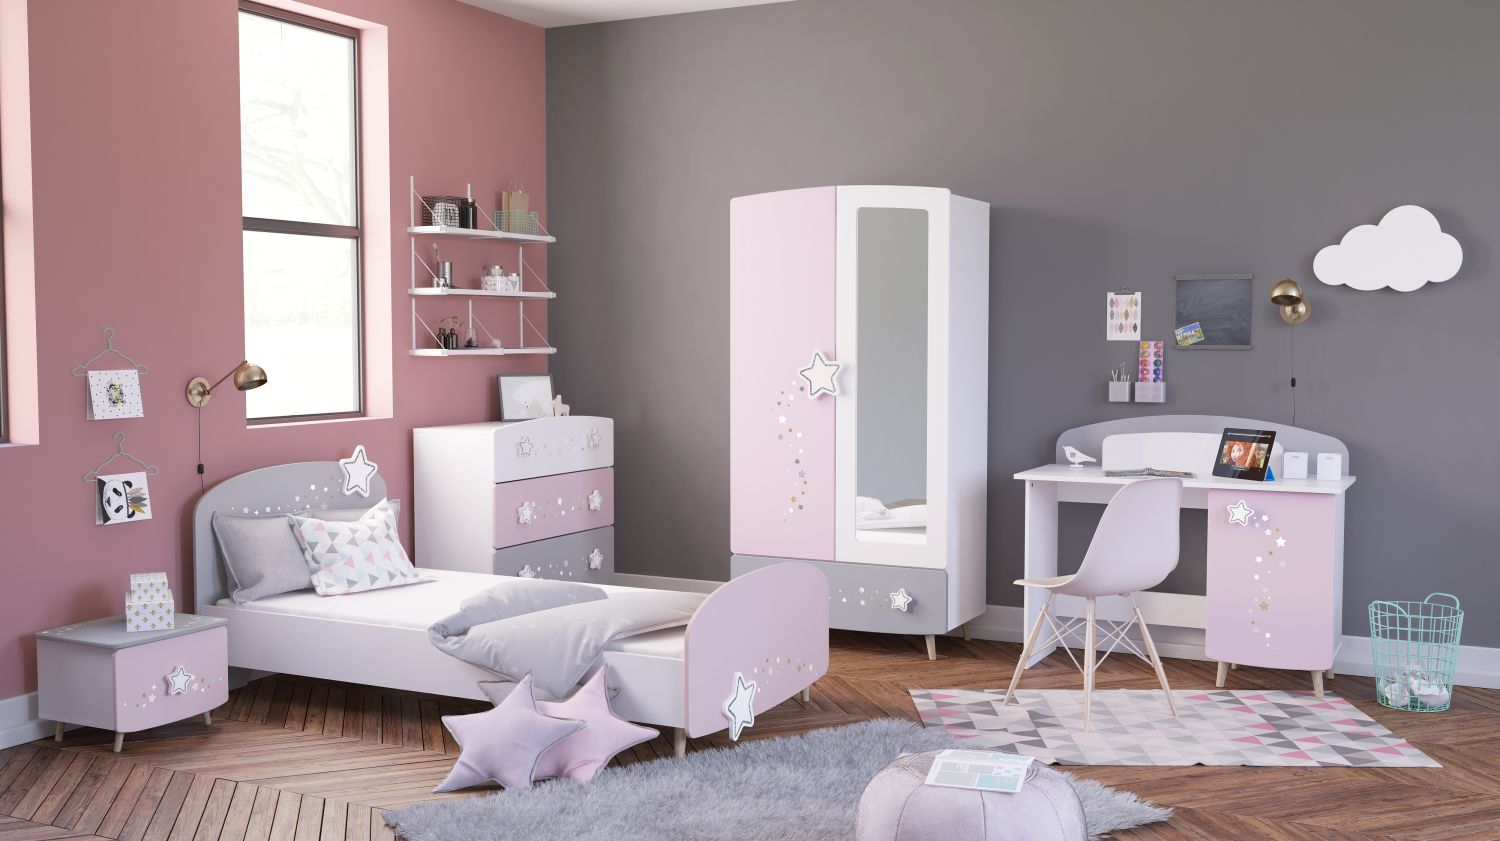 Kinderzimmer Sternschnuppe 5-tlg rosa weiß grau Kleiderschrank Kinderbett 2 Kommoden Schreibtisch